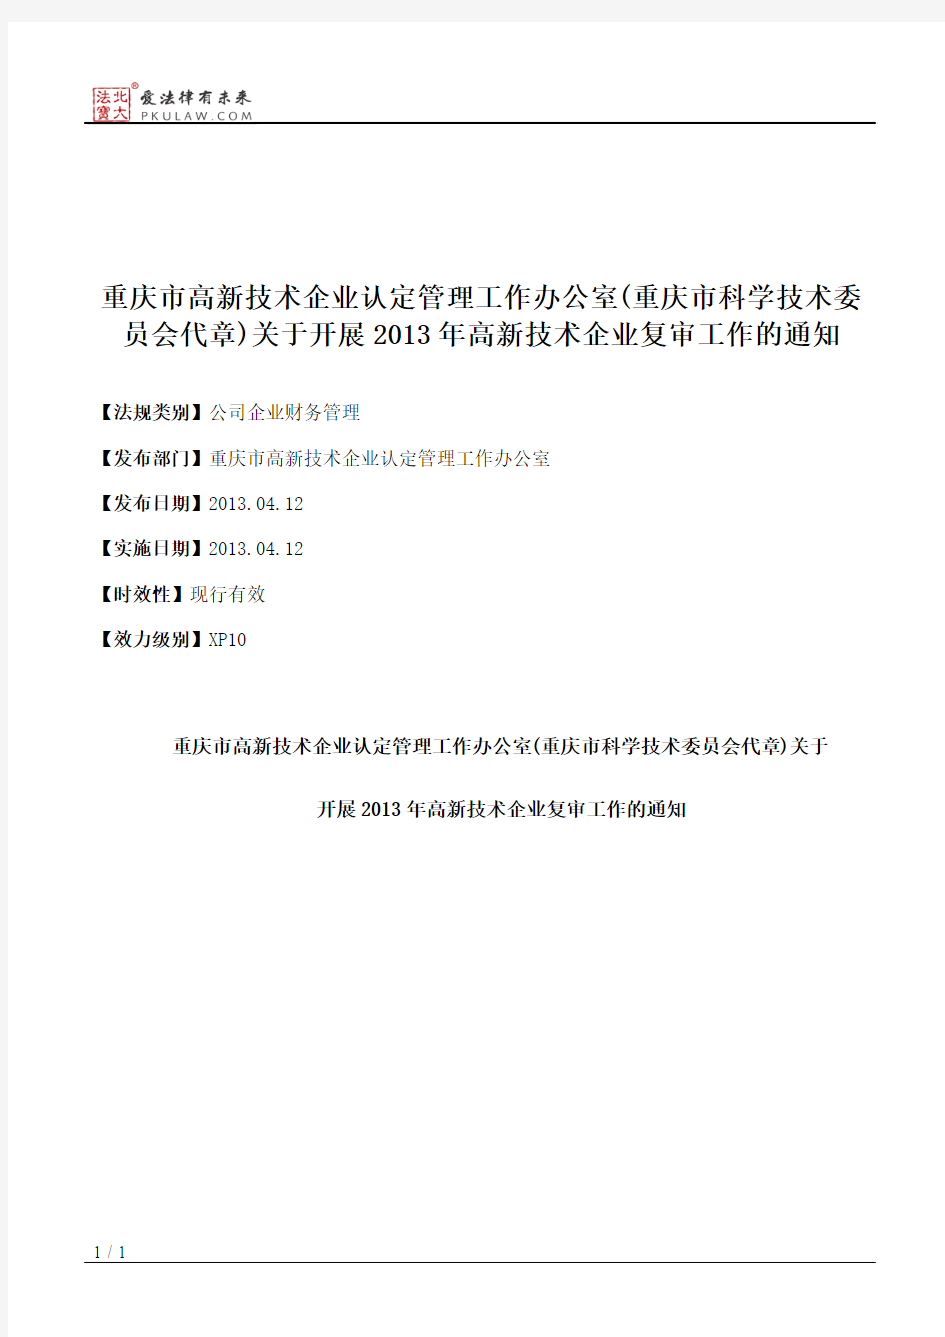 重庆市高新技术企业认定管理工作办公室(重庆市科学技术委员会代